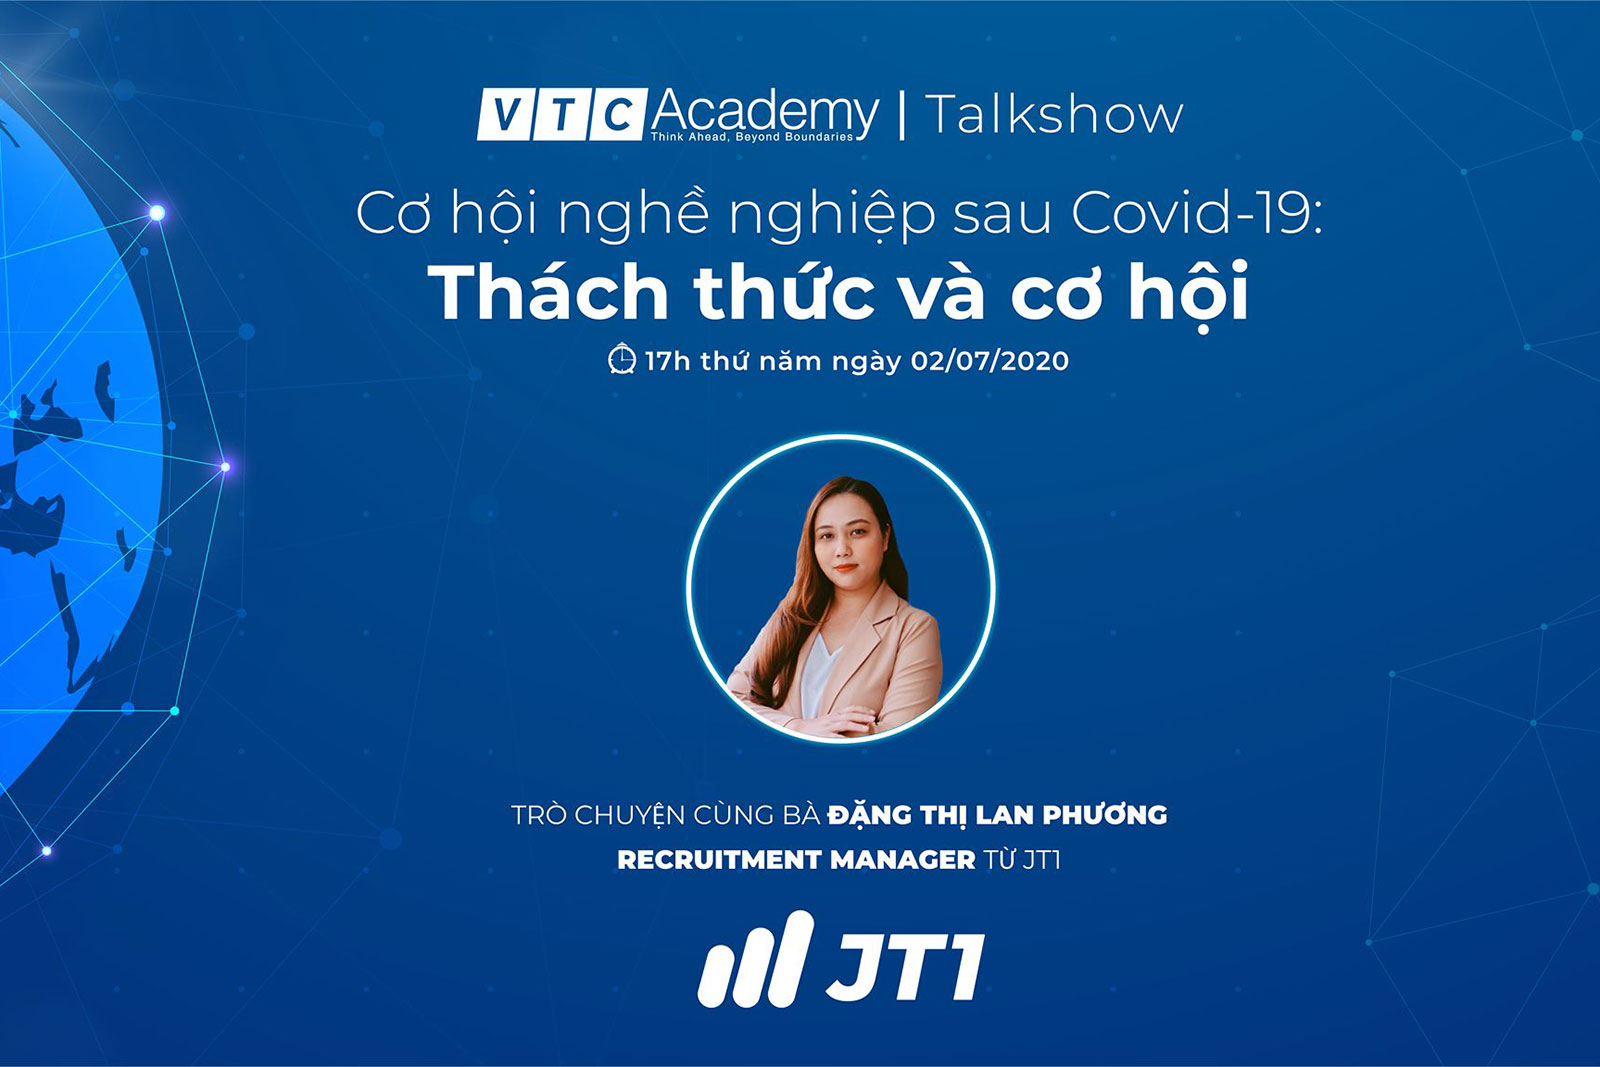 Talkshow “Cơ hội nghề nghiệp sau Covid-19: Thách thức và cơ hội”